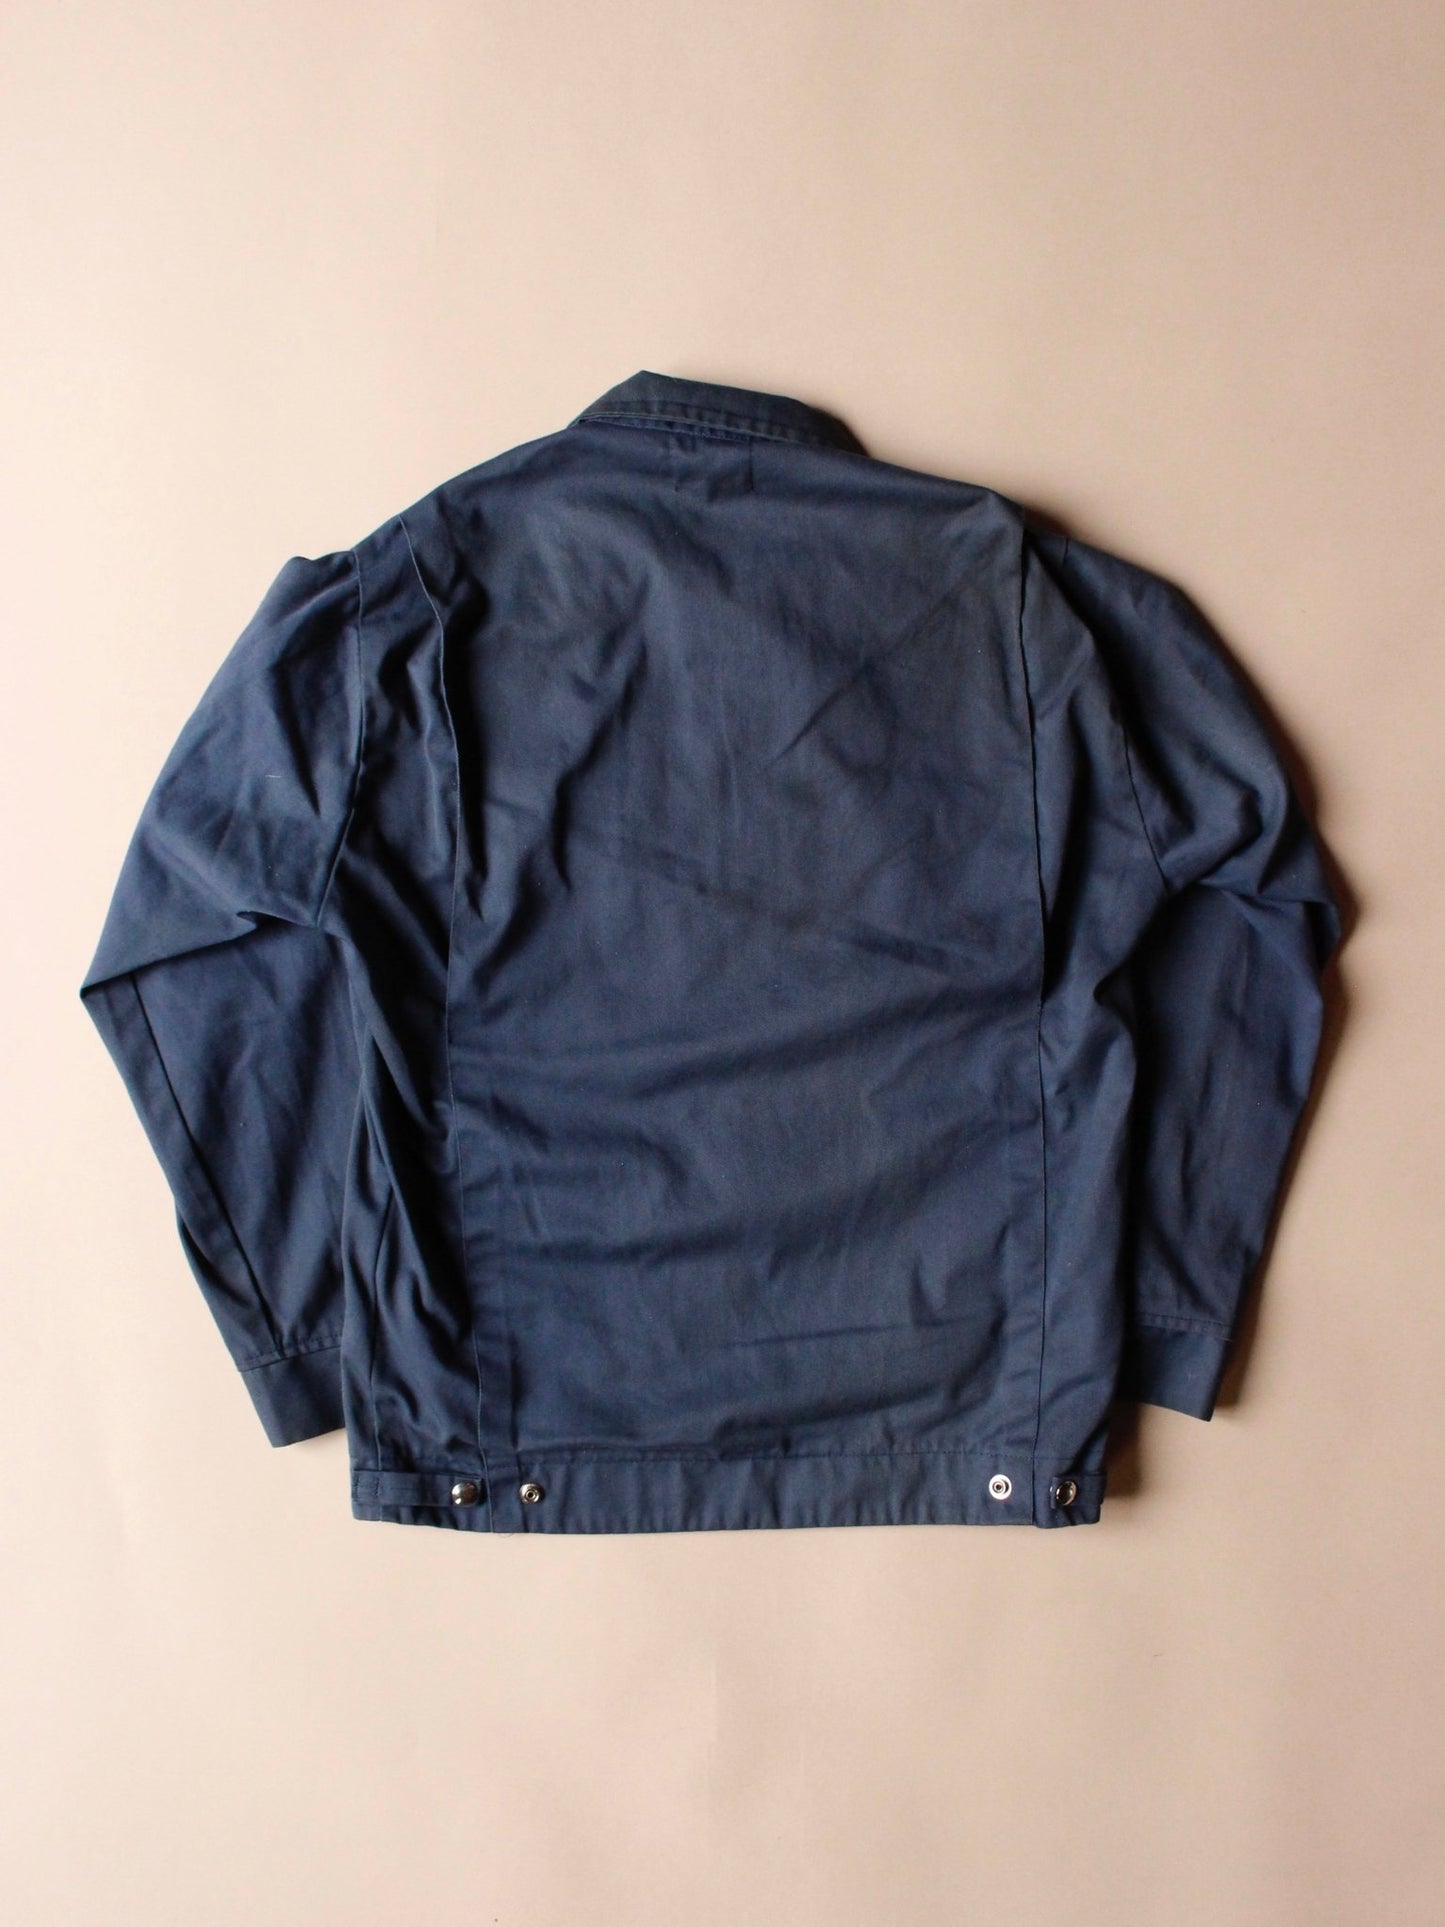 1980s Sears Workwear Jacket